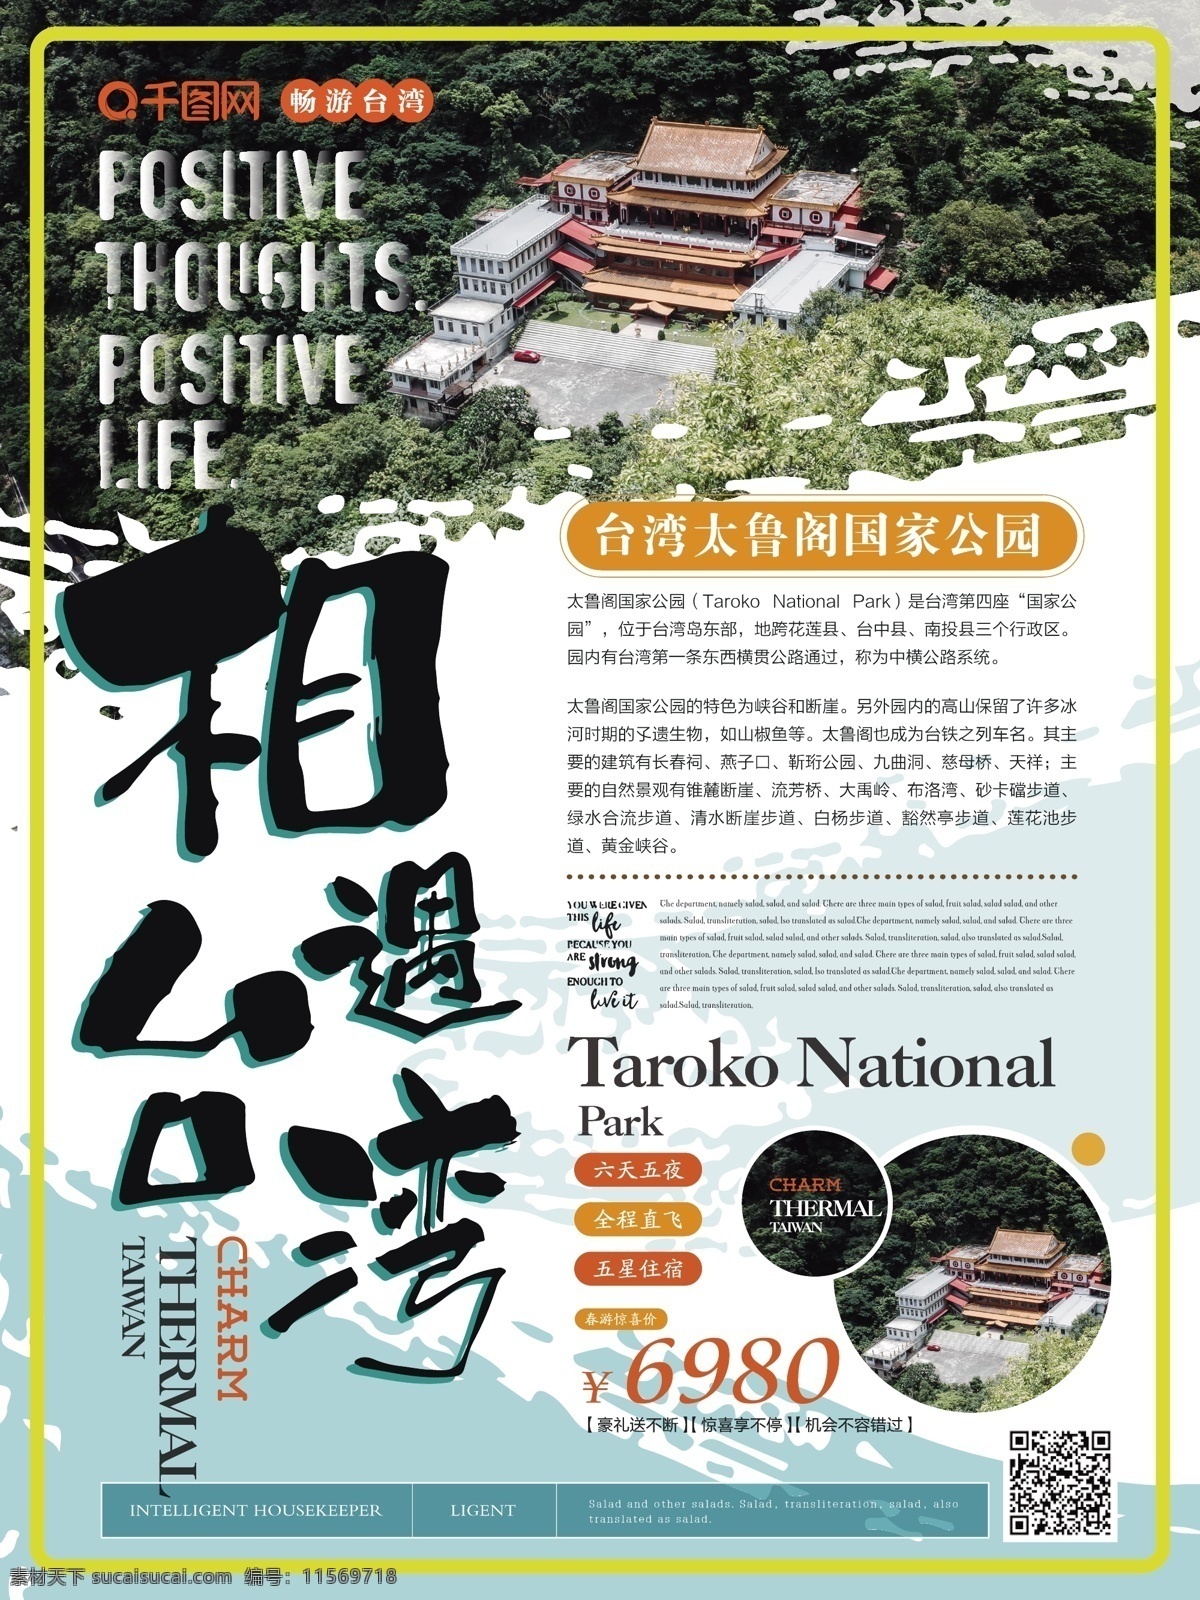 简约 清新 相遇 台湾 旅游 海报 简约风 相遇台湾 主题 太鲁阁 国家 公园 自然人文 清爽